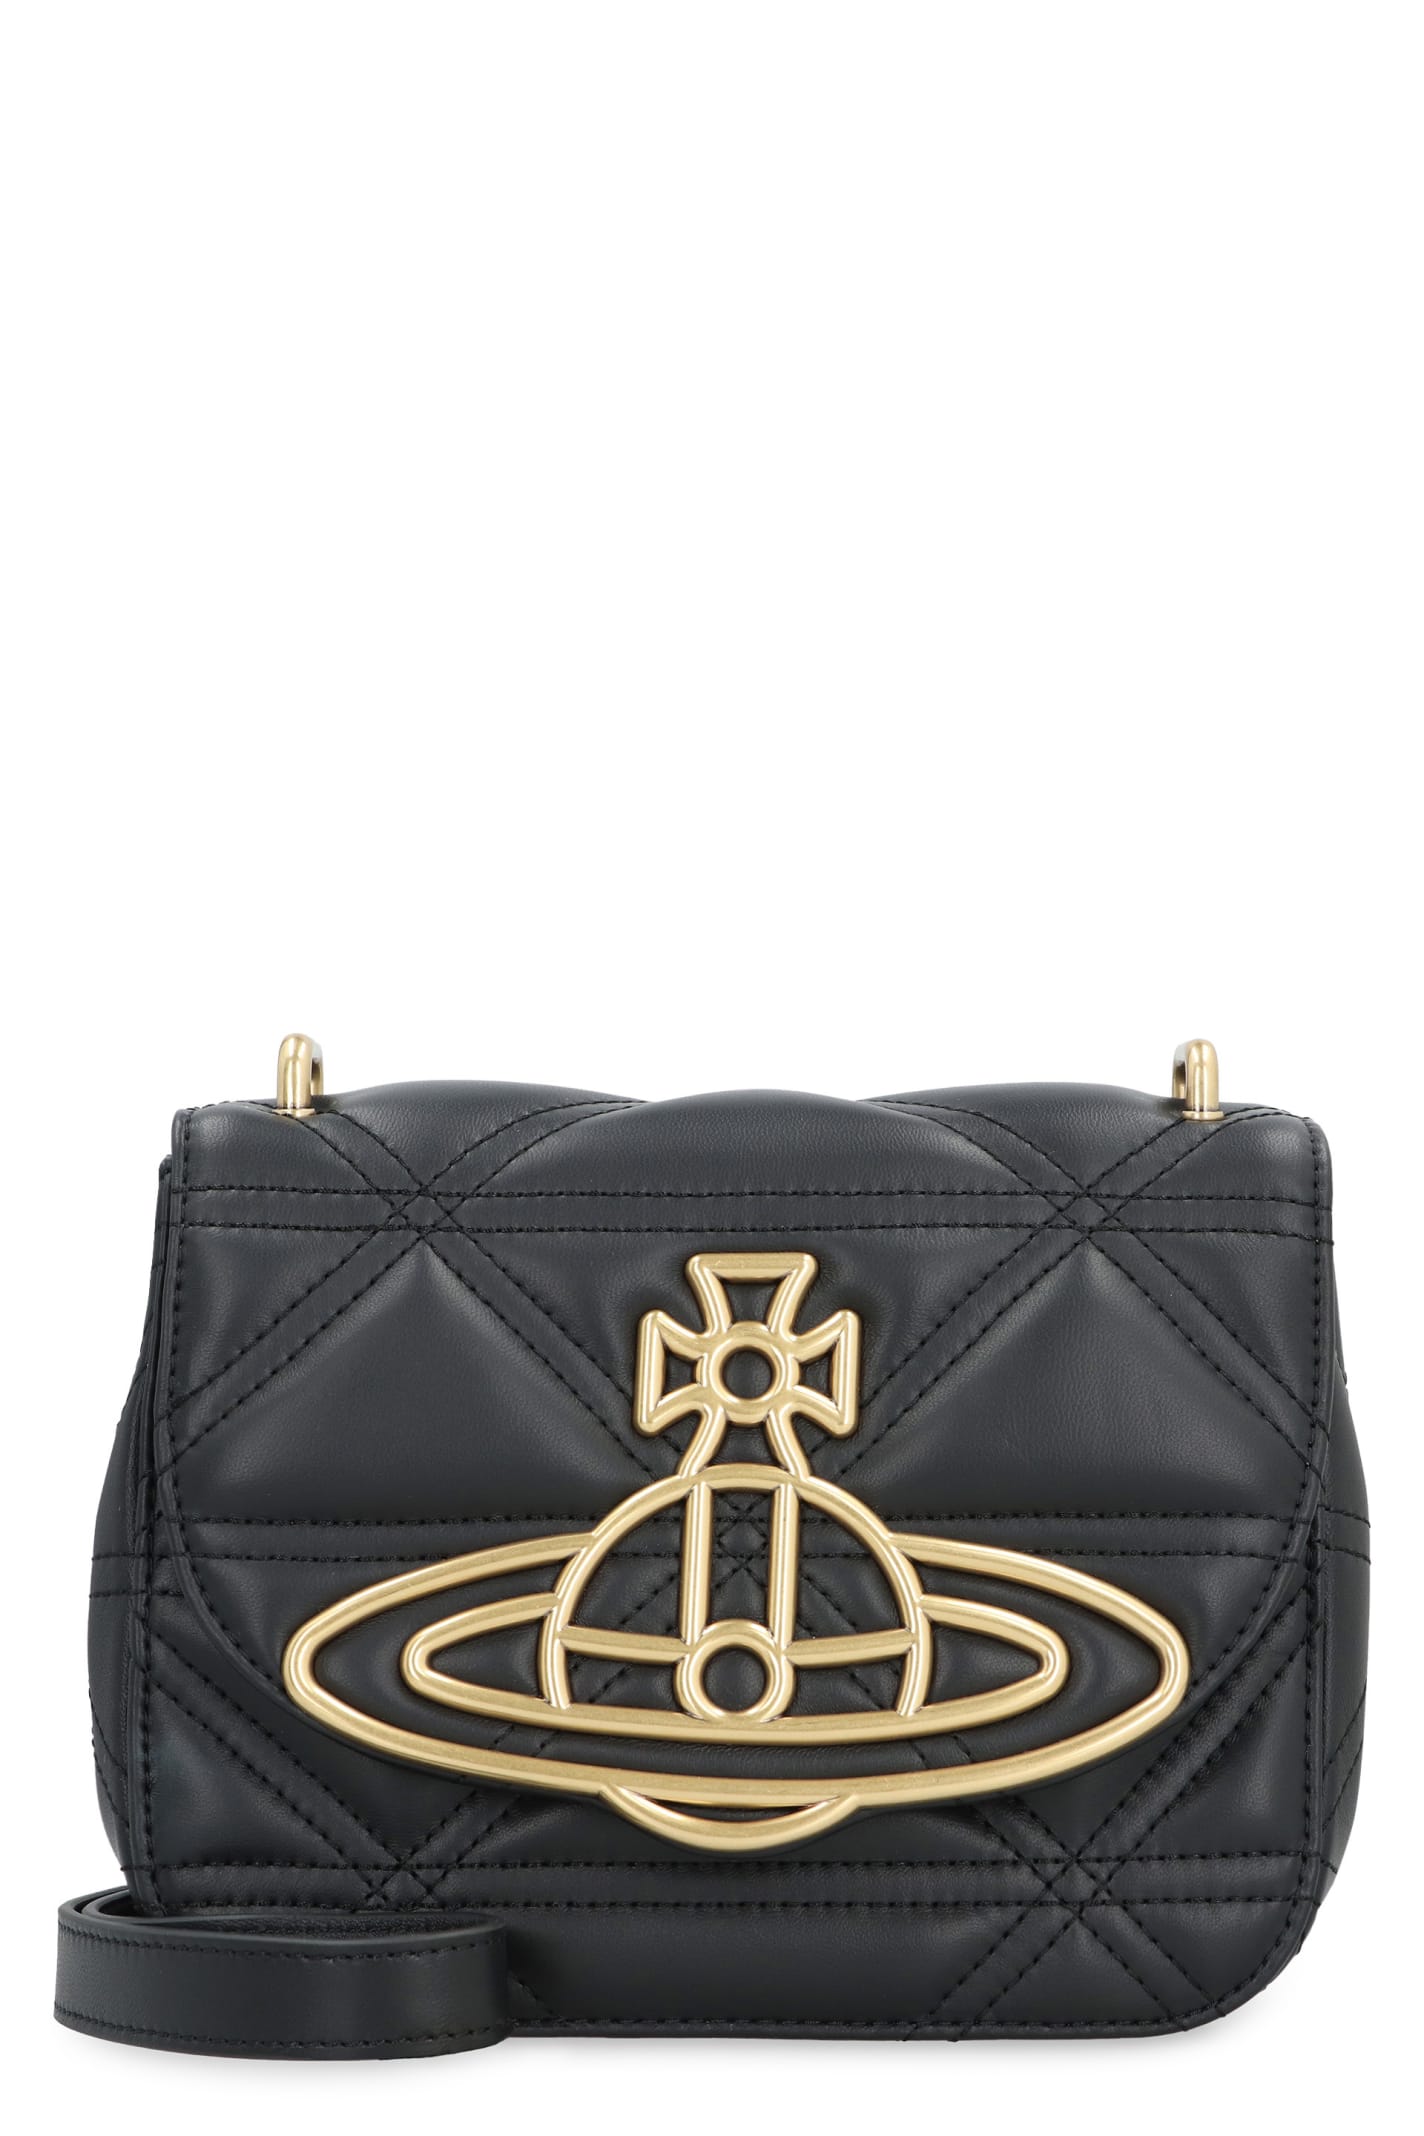 Vivienne Westwood Linda Leather Crossbody Bag In Black